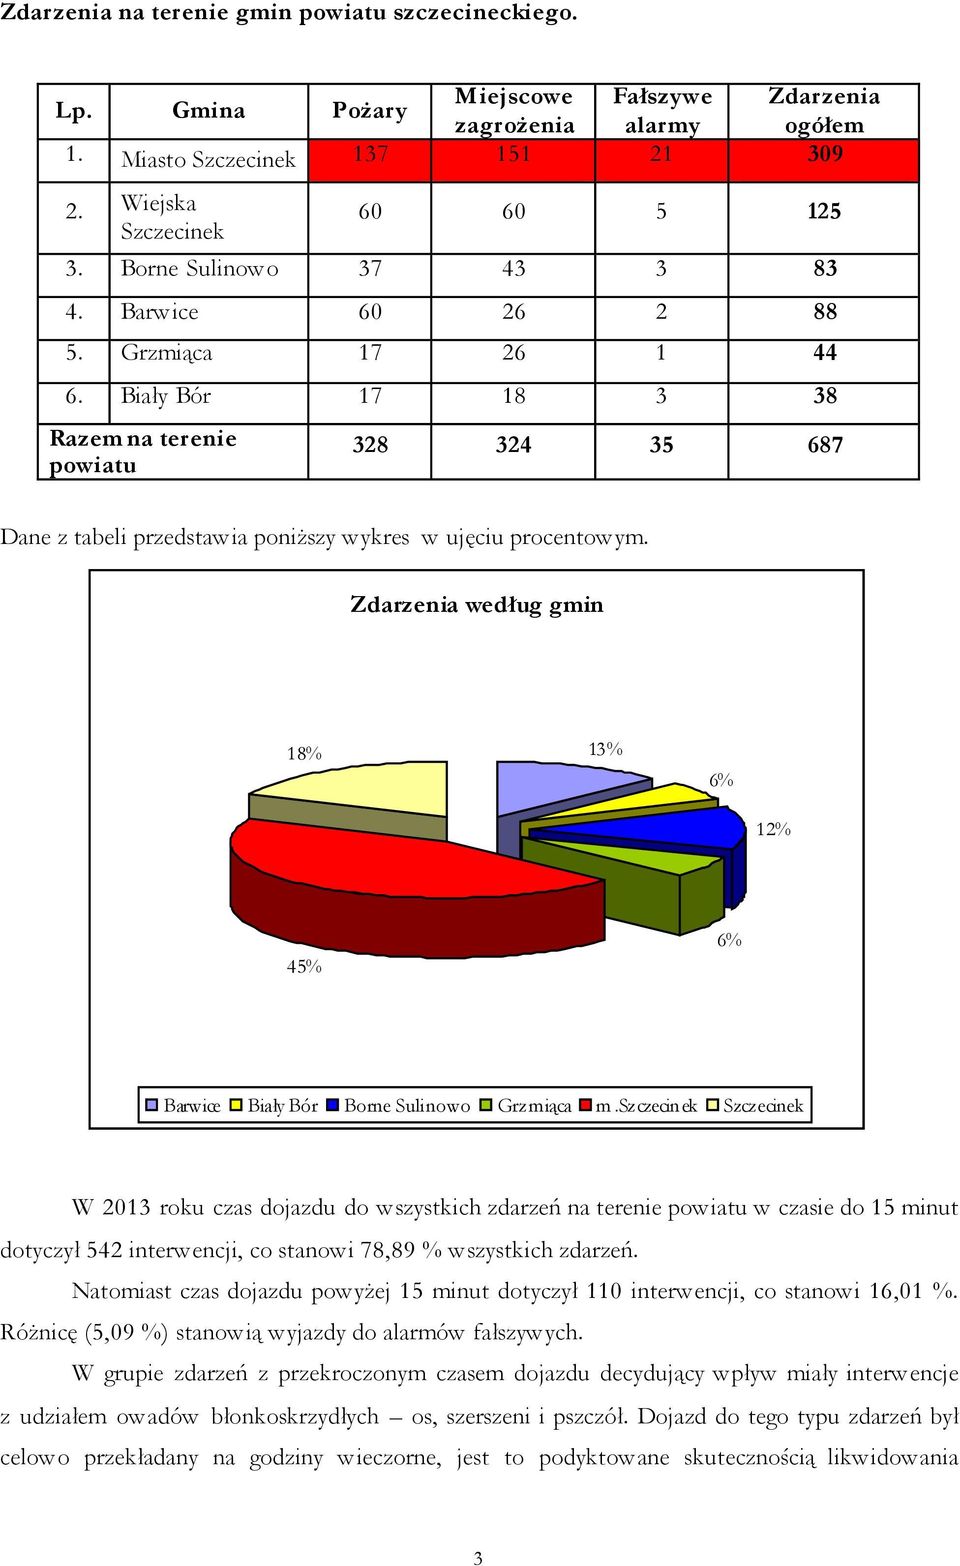 Zdarzenia według gmin 18% 13% 6% 12% 45% 6% Barwice Biały Bór Borne Sulinowo Grzmiąca m.